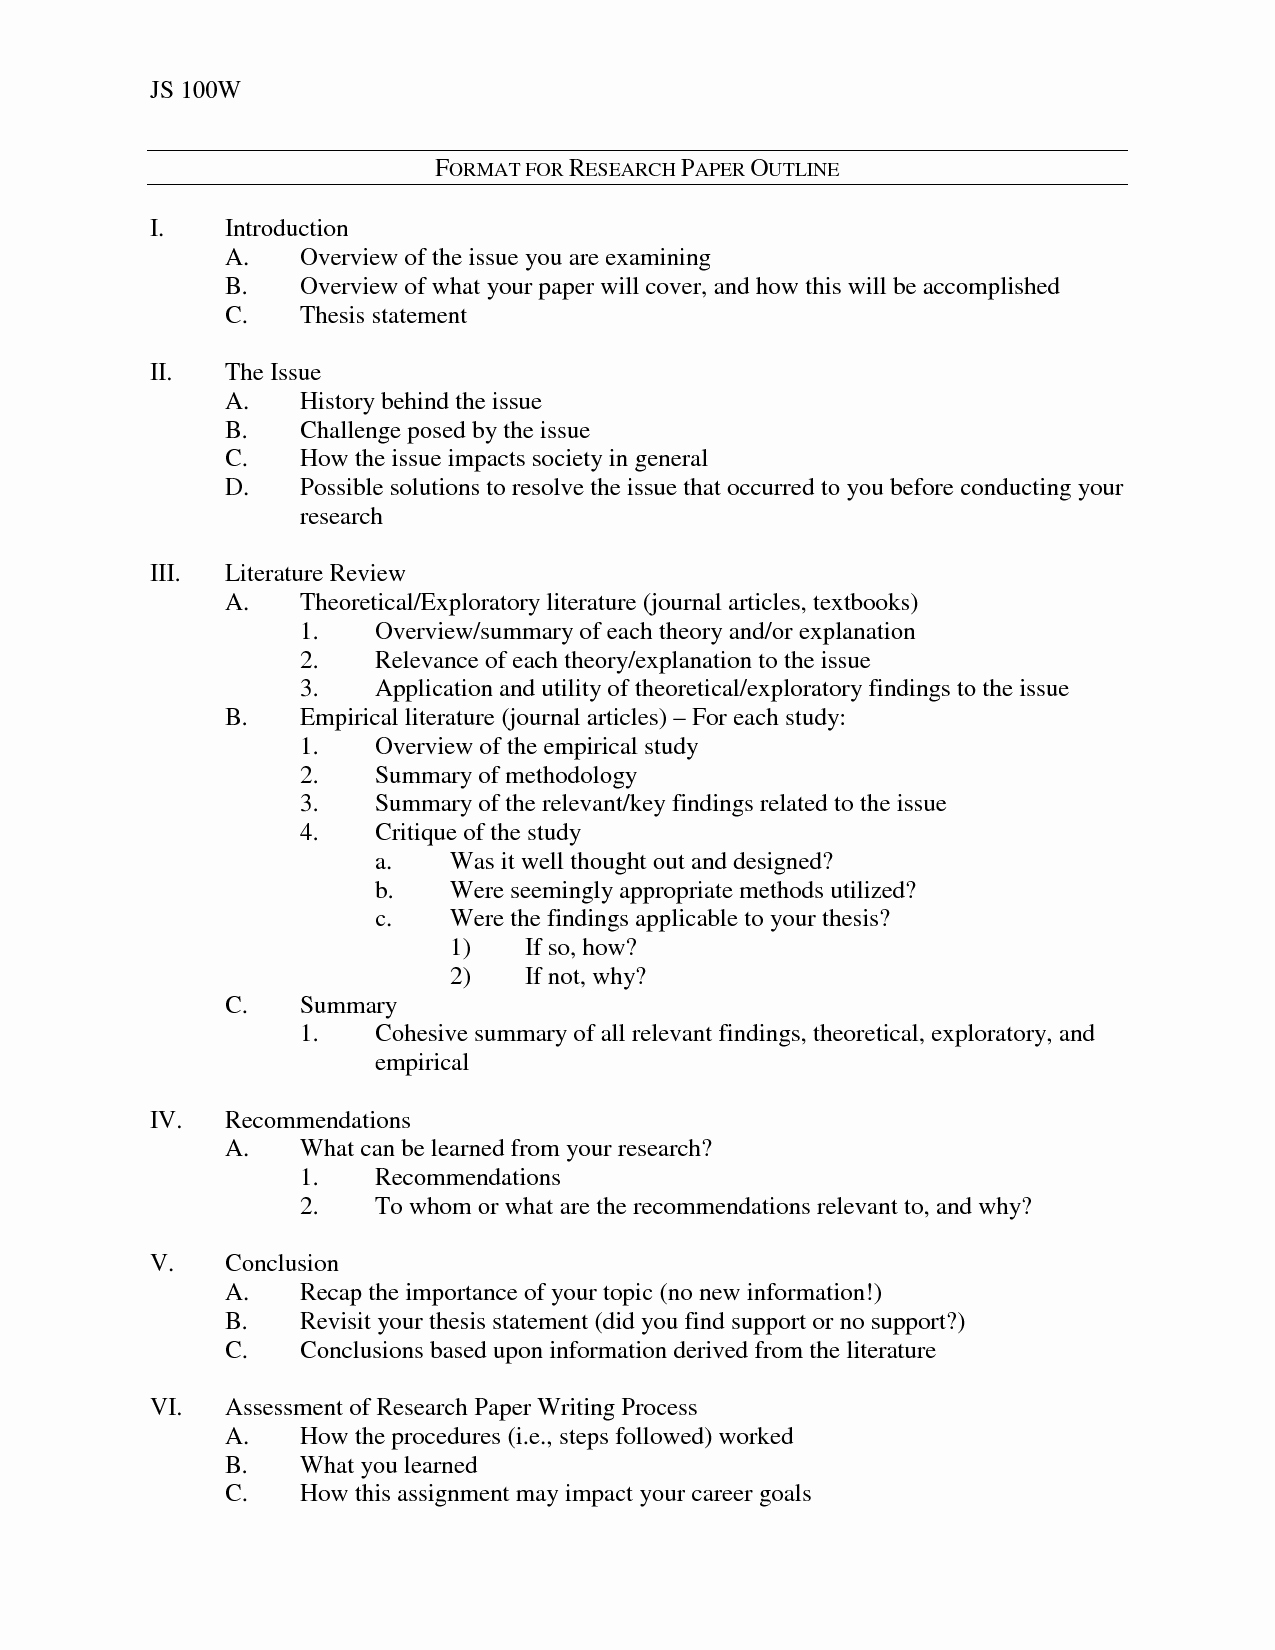 College Essay format Apa Unique Research Paper Outline format by Vvg 93p8publ